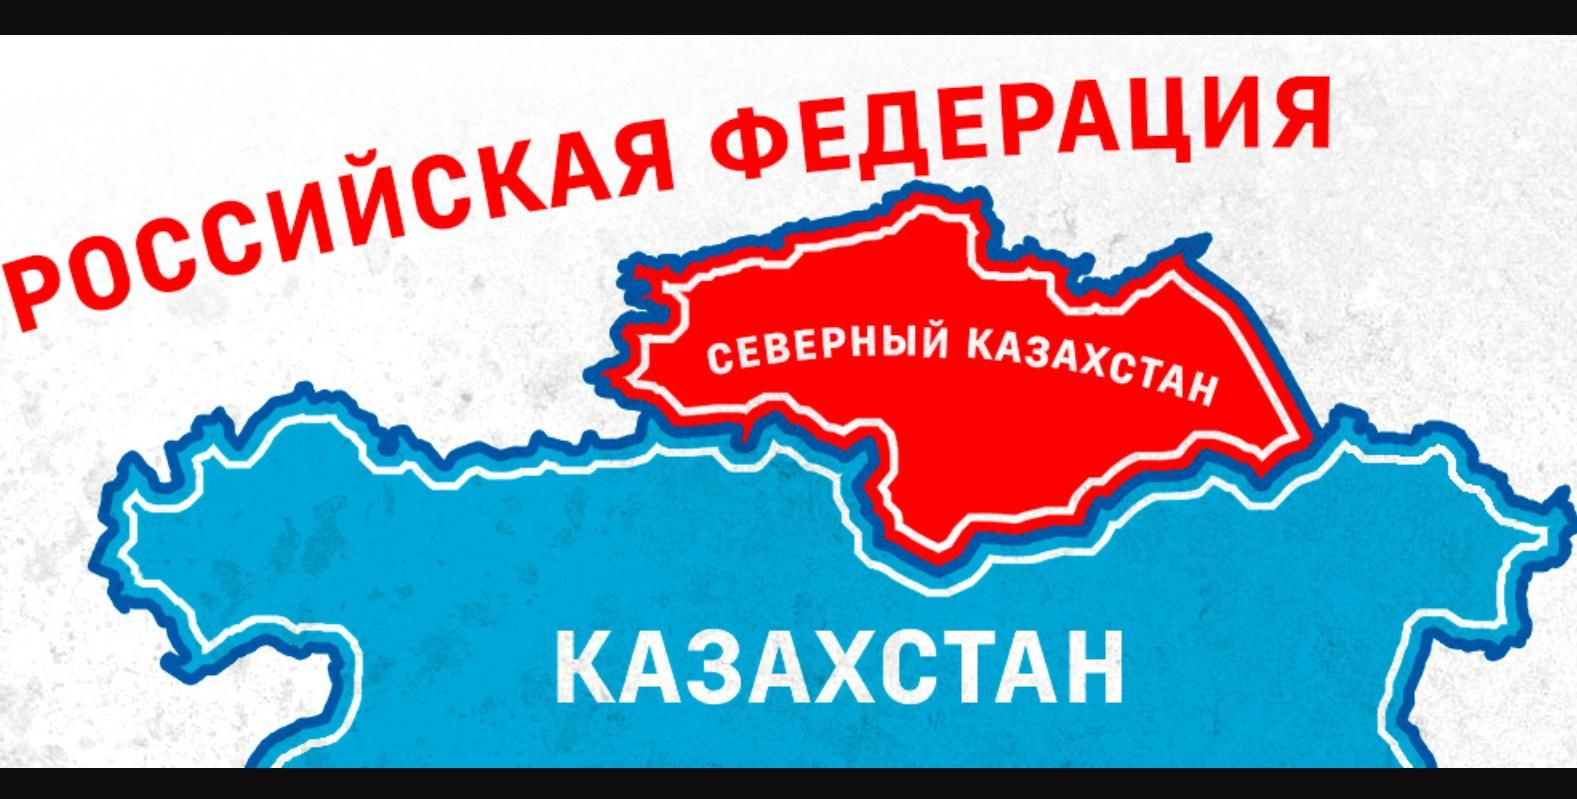 "Независимость северного Казахстана", - Астана отреагировала на шаг пророссийских сепаратистов